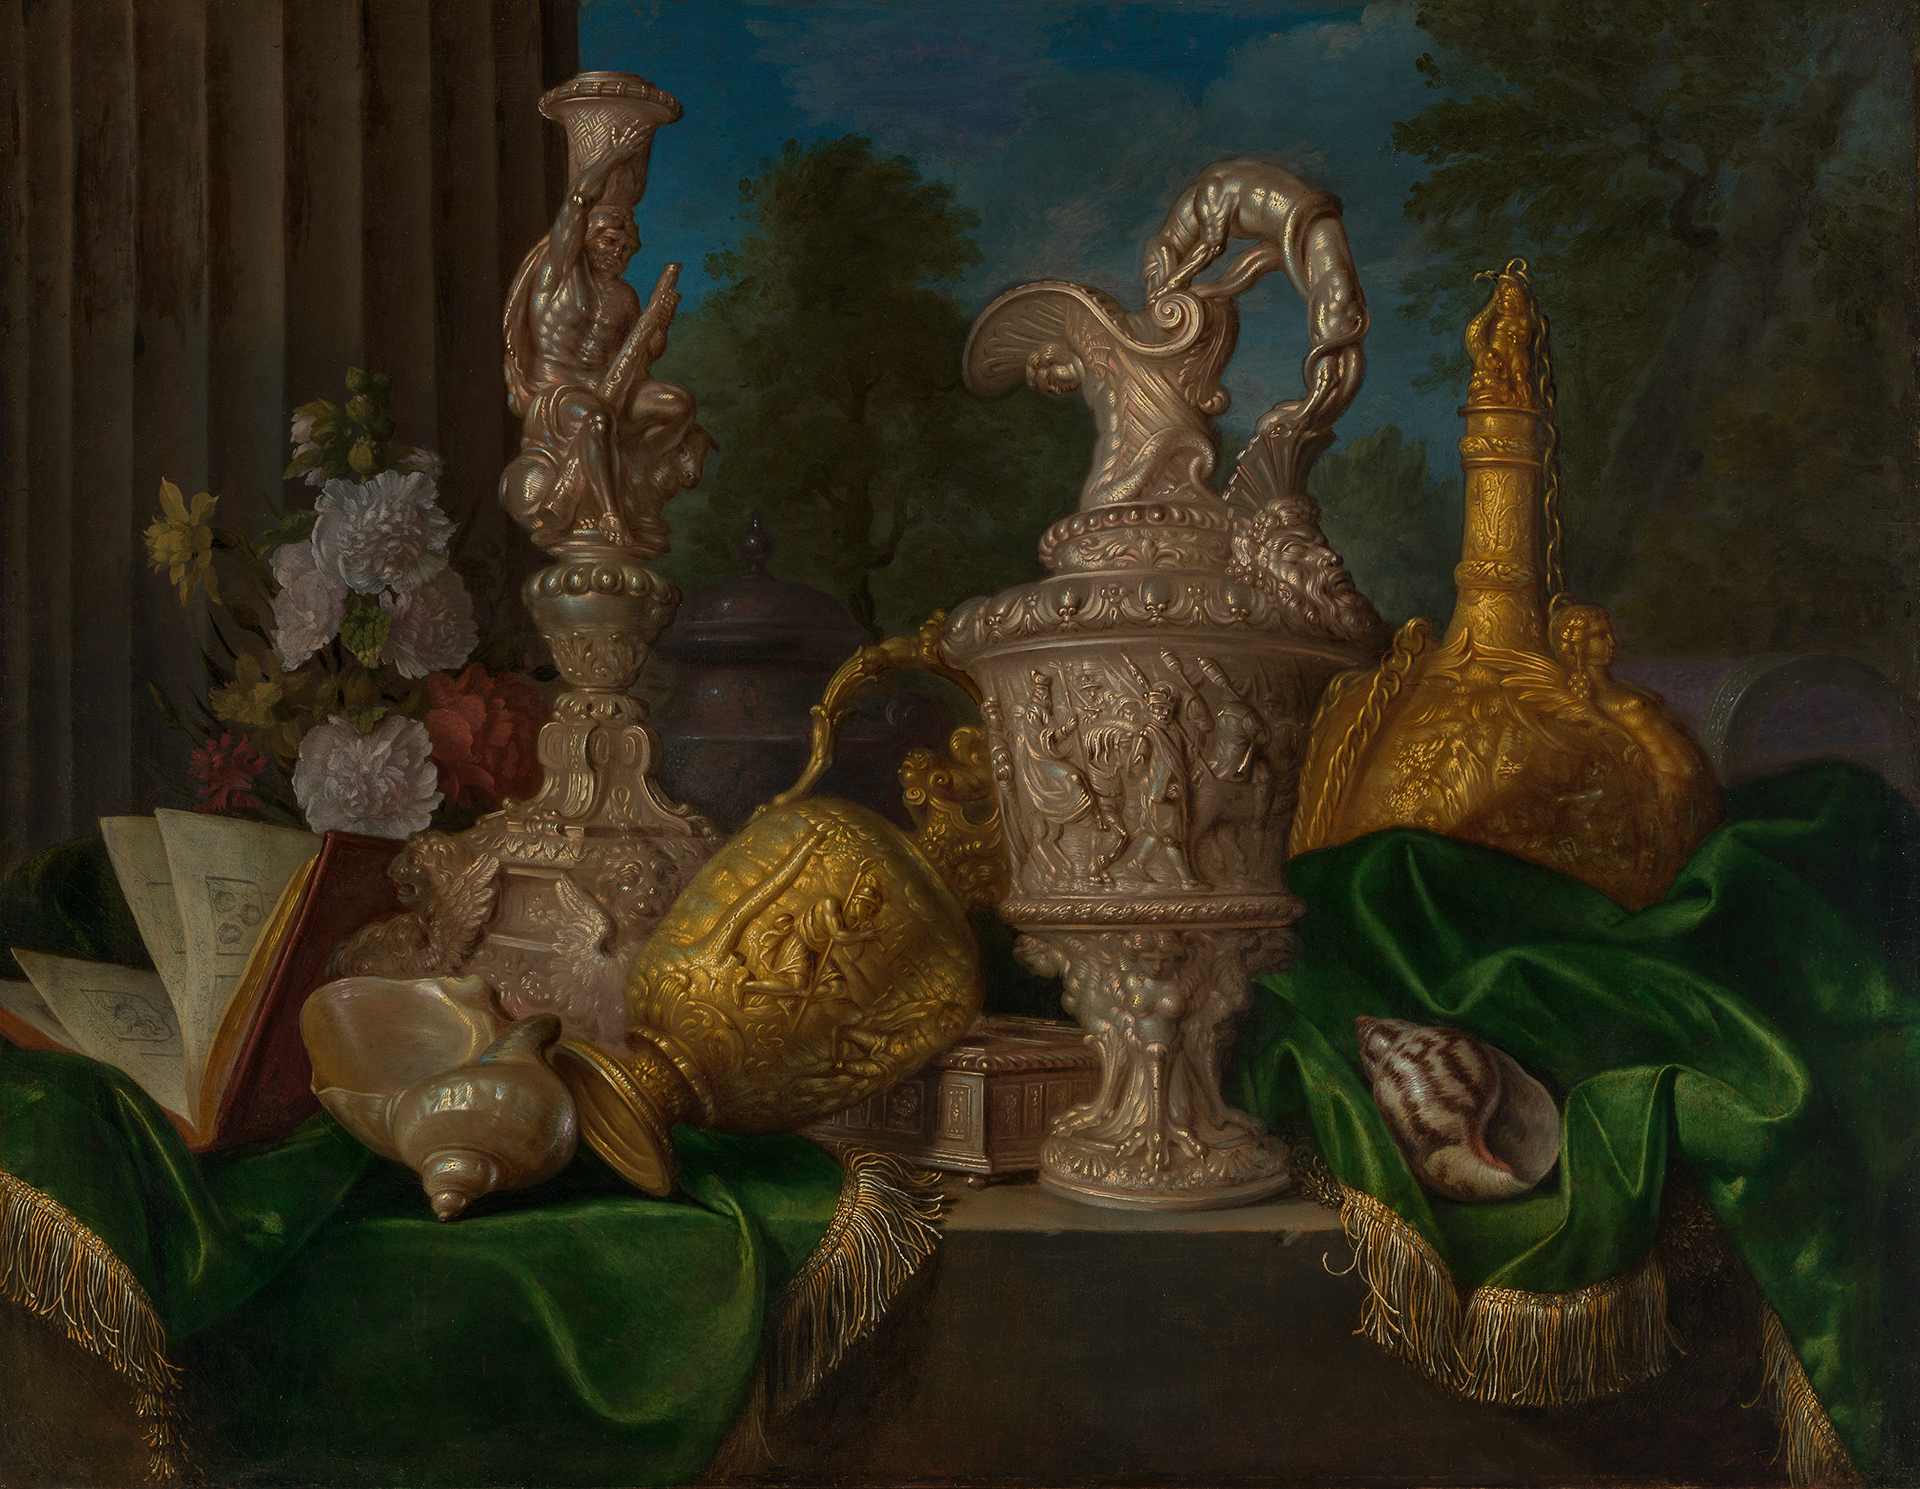 Der Maler Meiffren Conte zeigt in seinem Stillleben prächtige goldene und silberne Gefäße, arrangiert mit Blumen, Muscheln, einem Buch und einem edlen Stoff